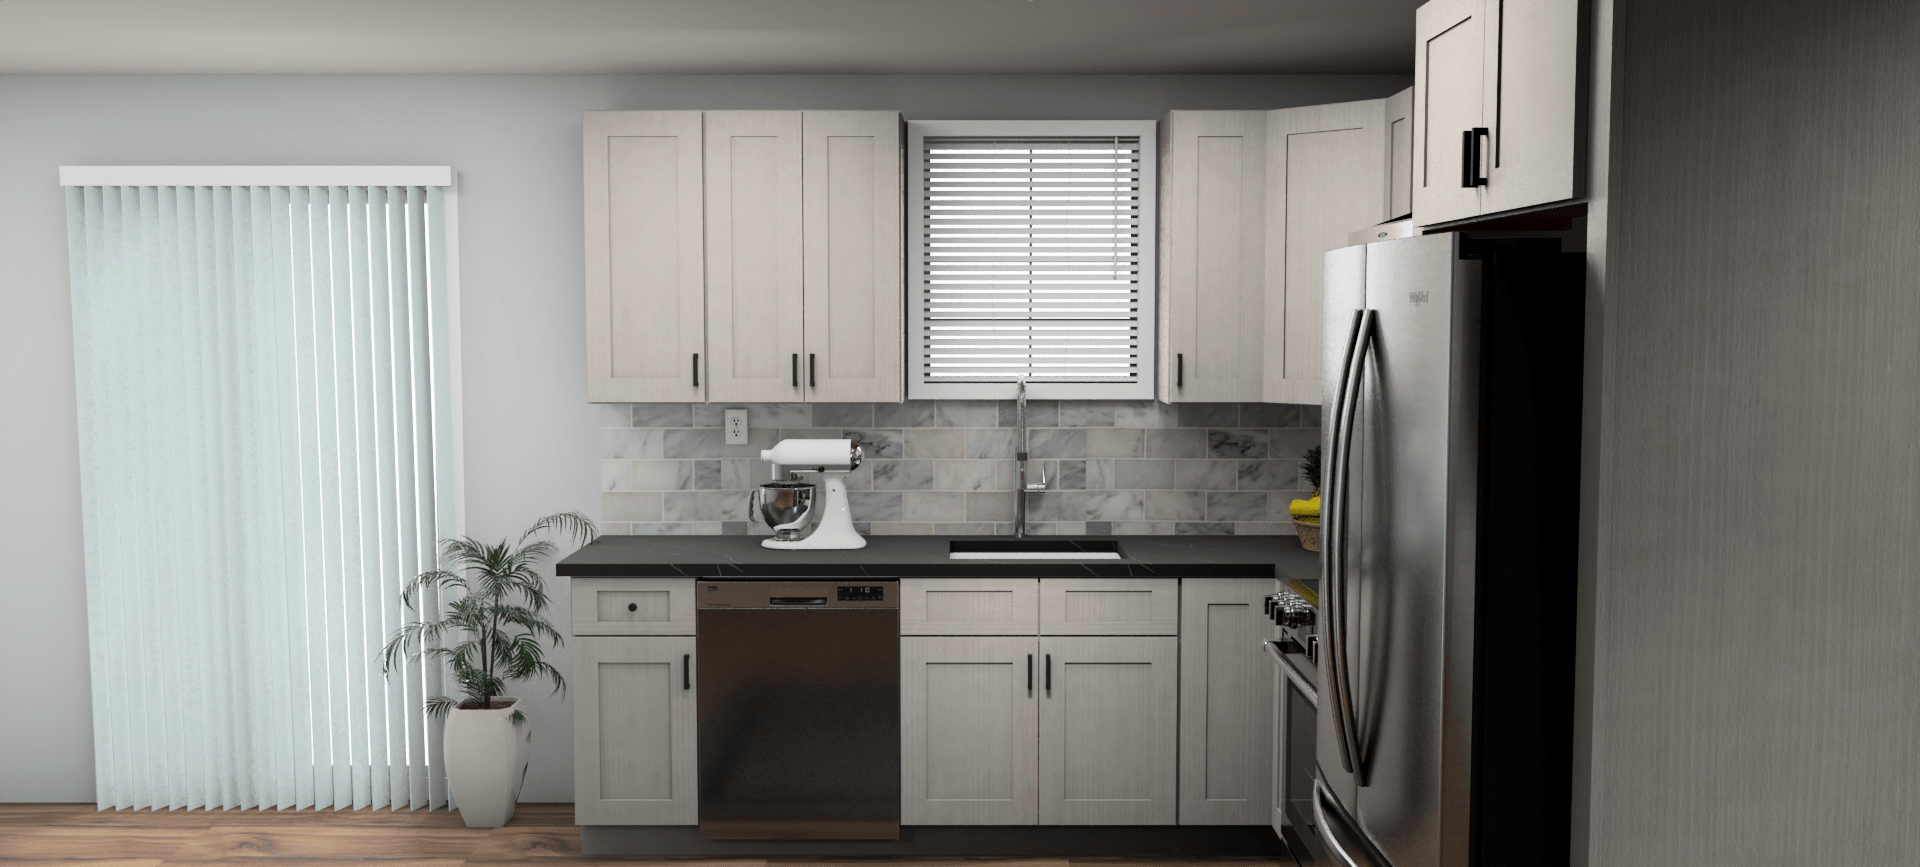 Fabuwood Allure Galaxy Horizon 9 x 10 L Shaped Kitchen Side Layout Photo